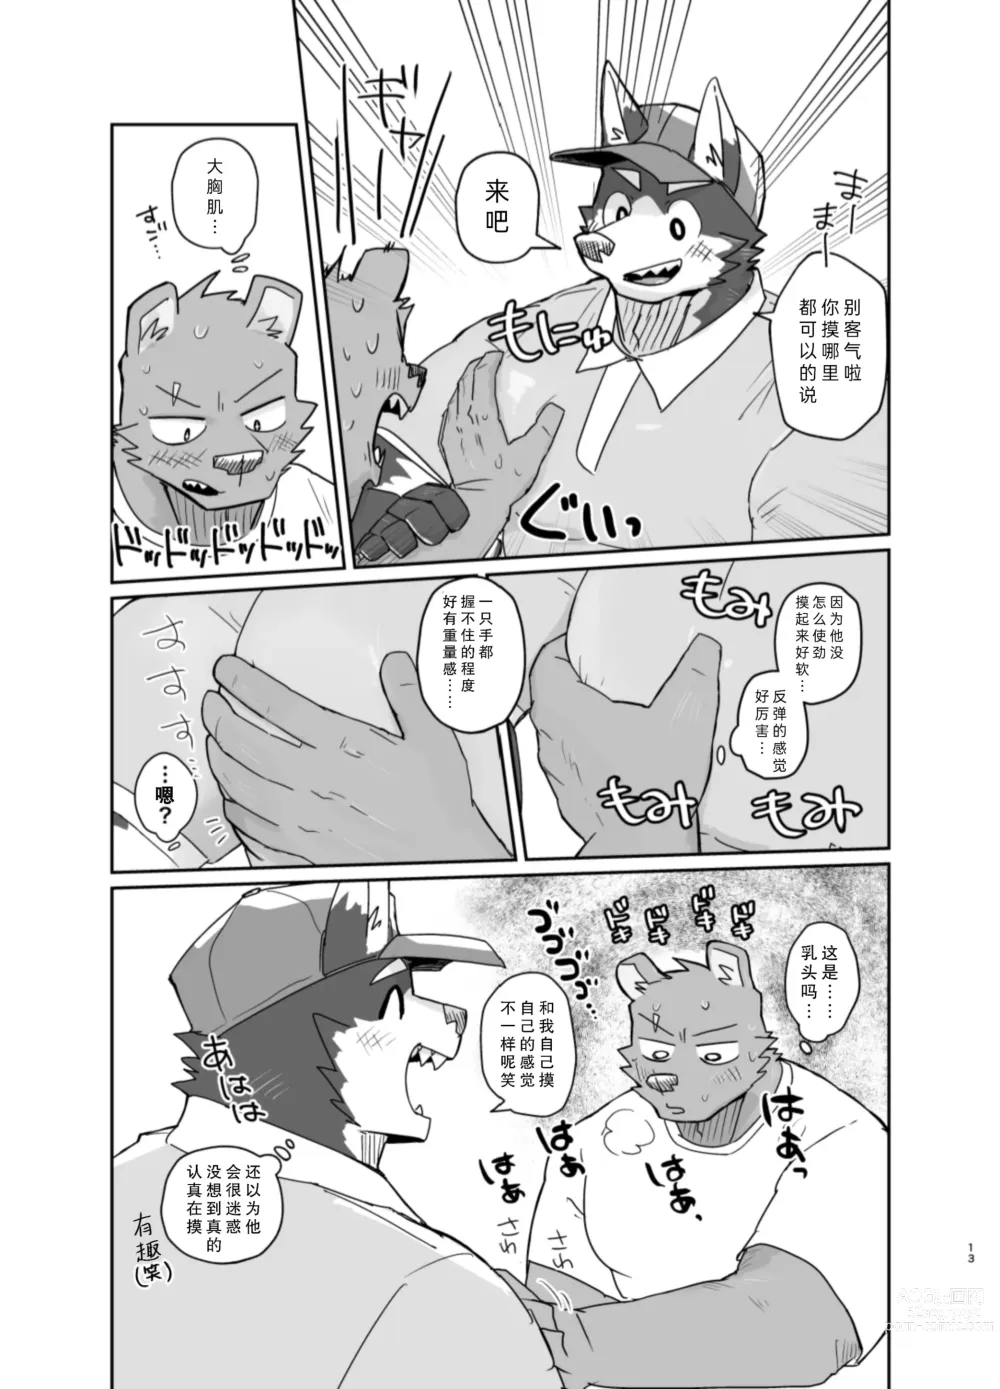 Page 13 of doujinshi 搬家的十分钟服务